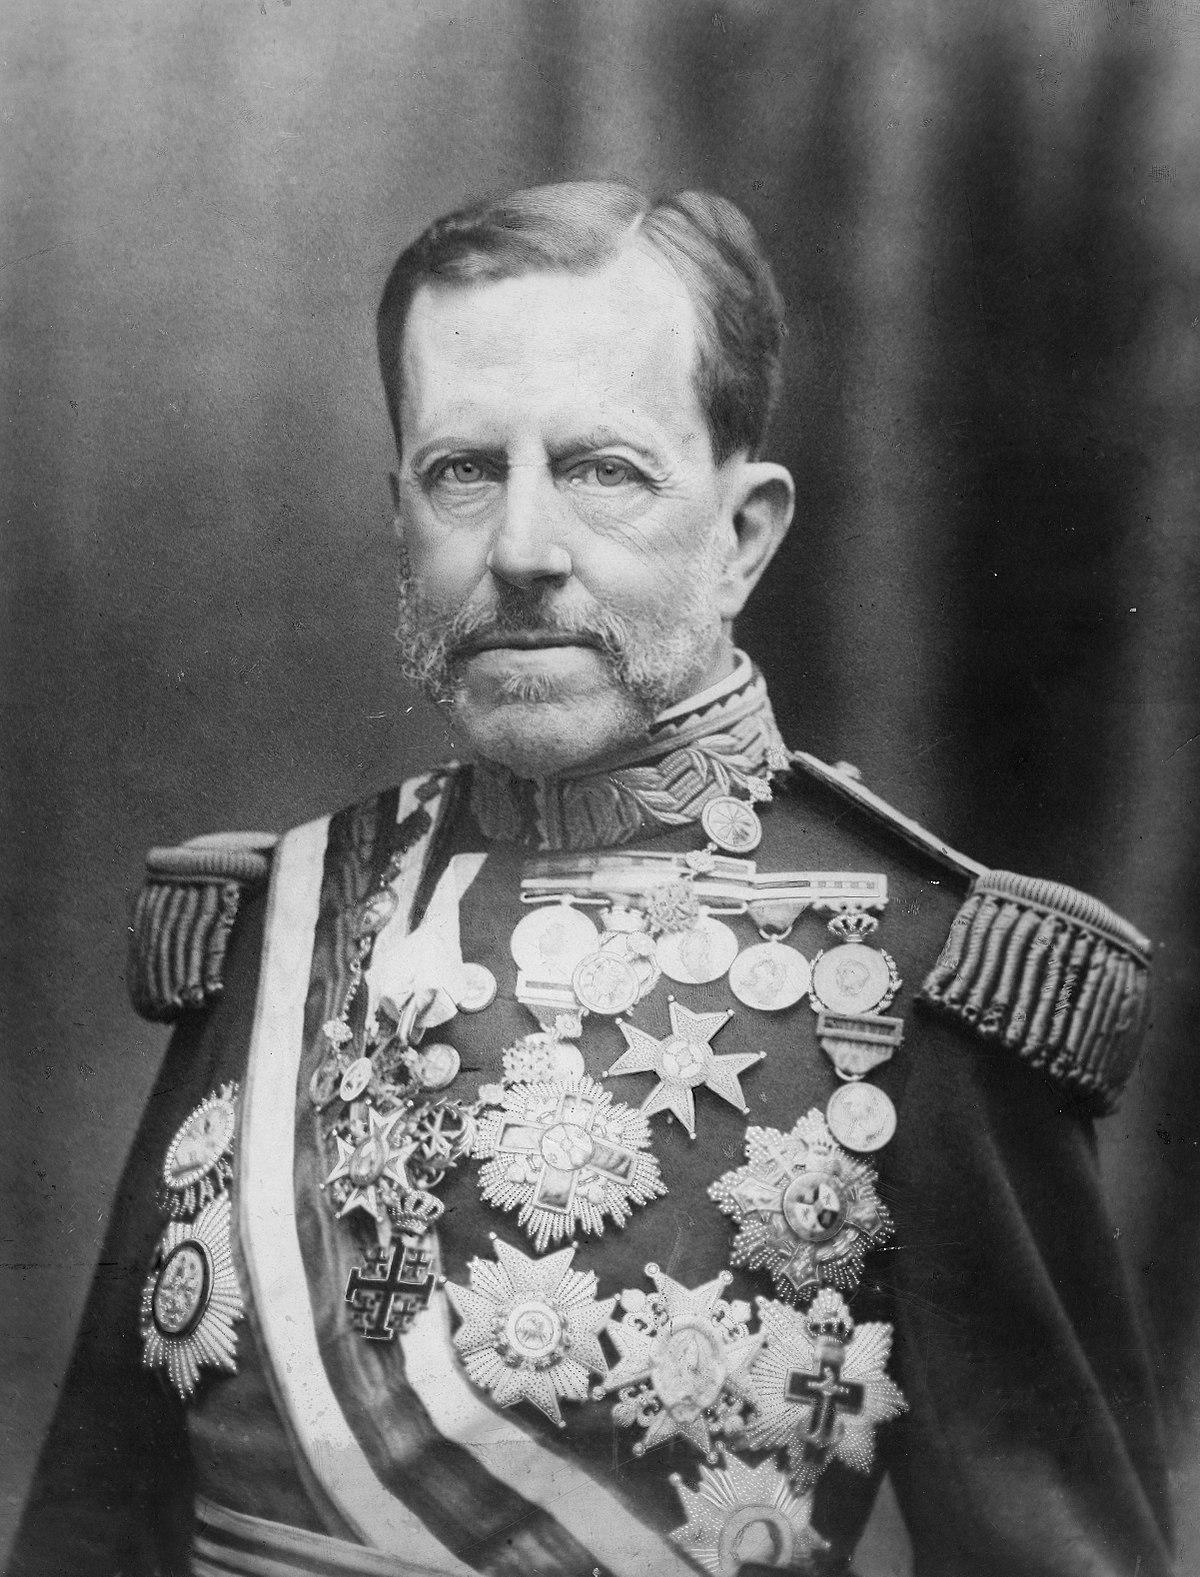 La vocación militar del general Weyler no se entiende sin el episodio en el que siendo un mozalbete ganó la lotería.